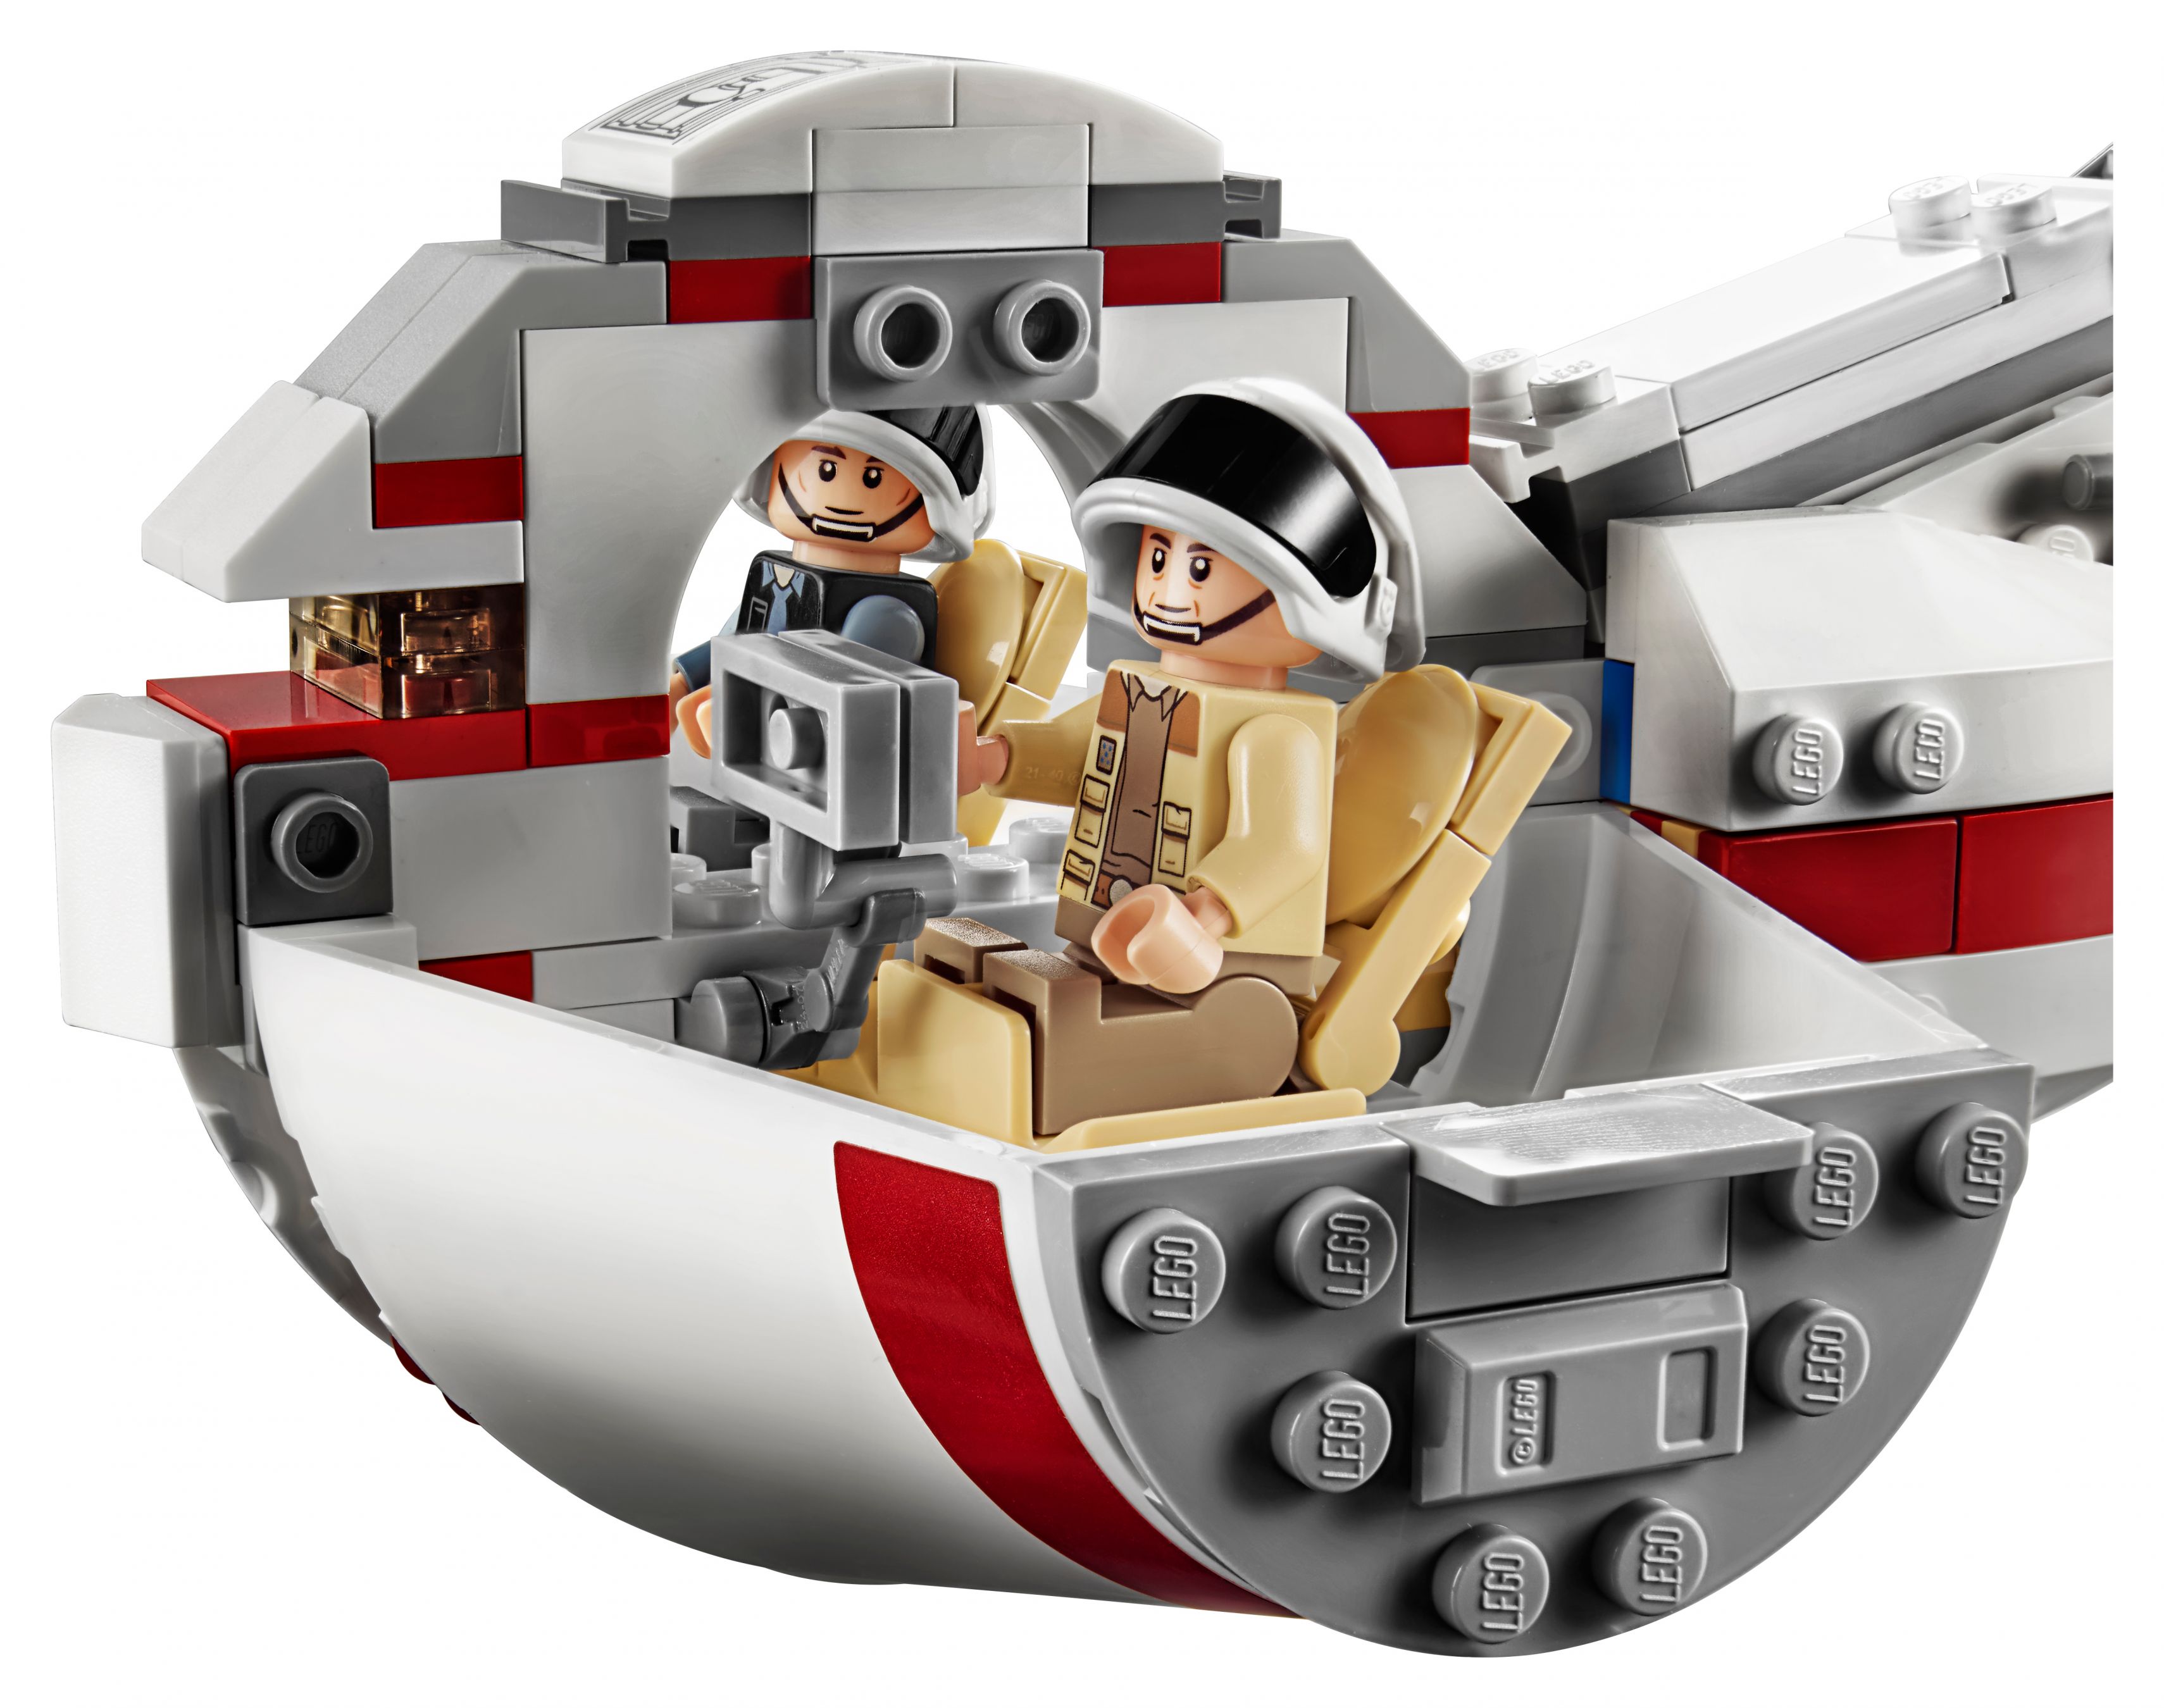 LEGO Star Wars 75244 Tantive IV LEGO_75244_alt6.jpg